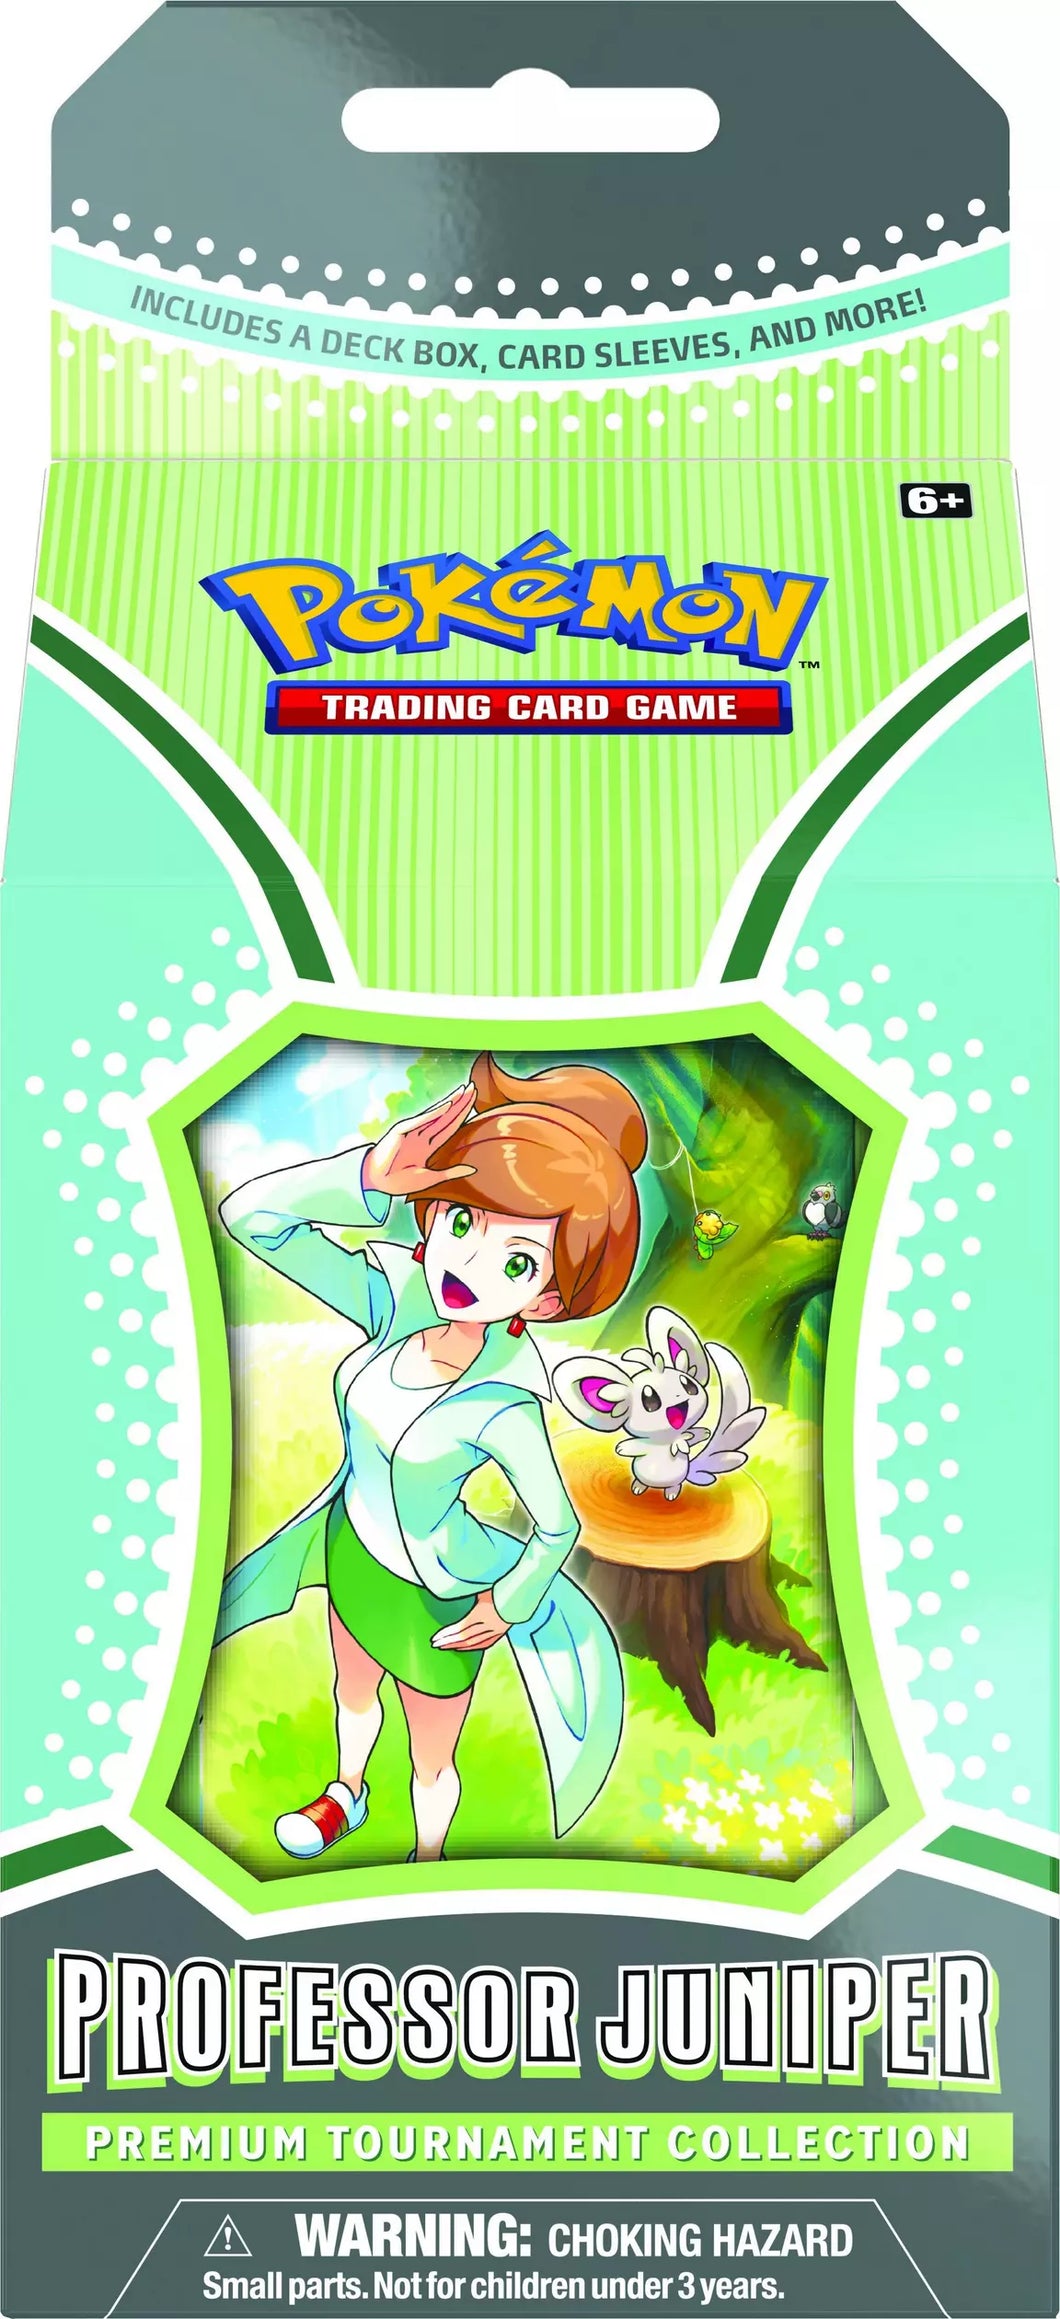 Pokemon Trading Card Game: Professor Juniper Premium Tournament Collection Box